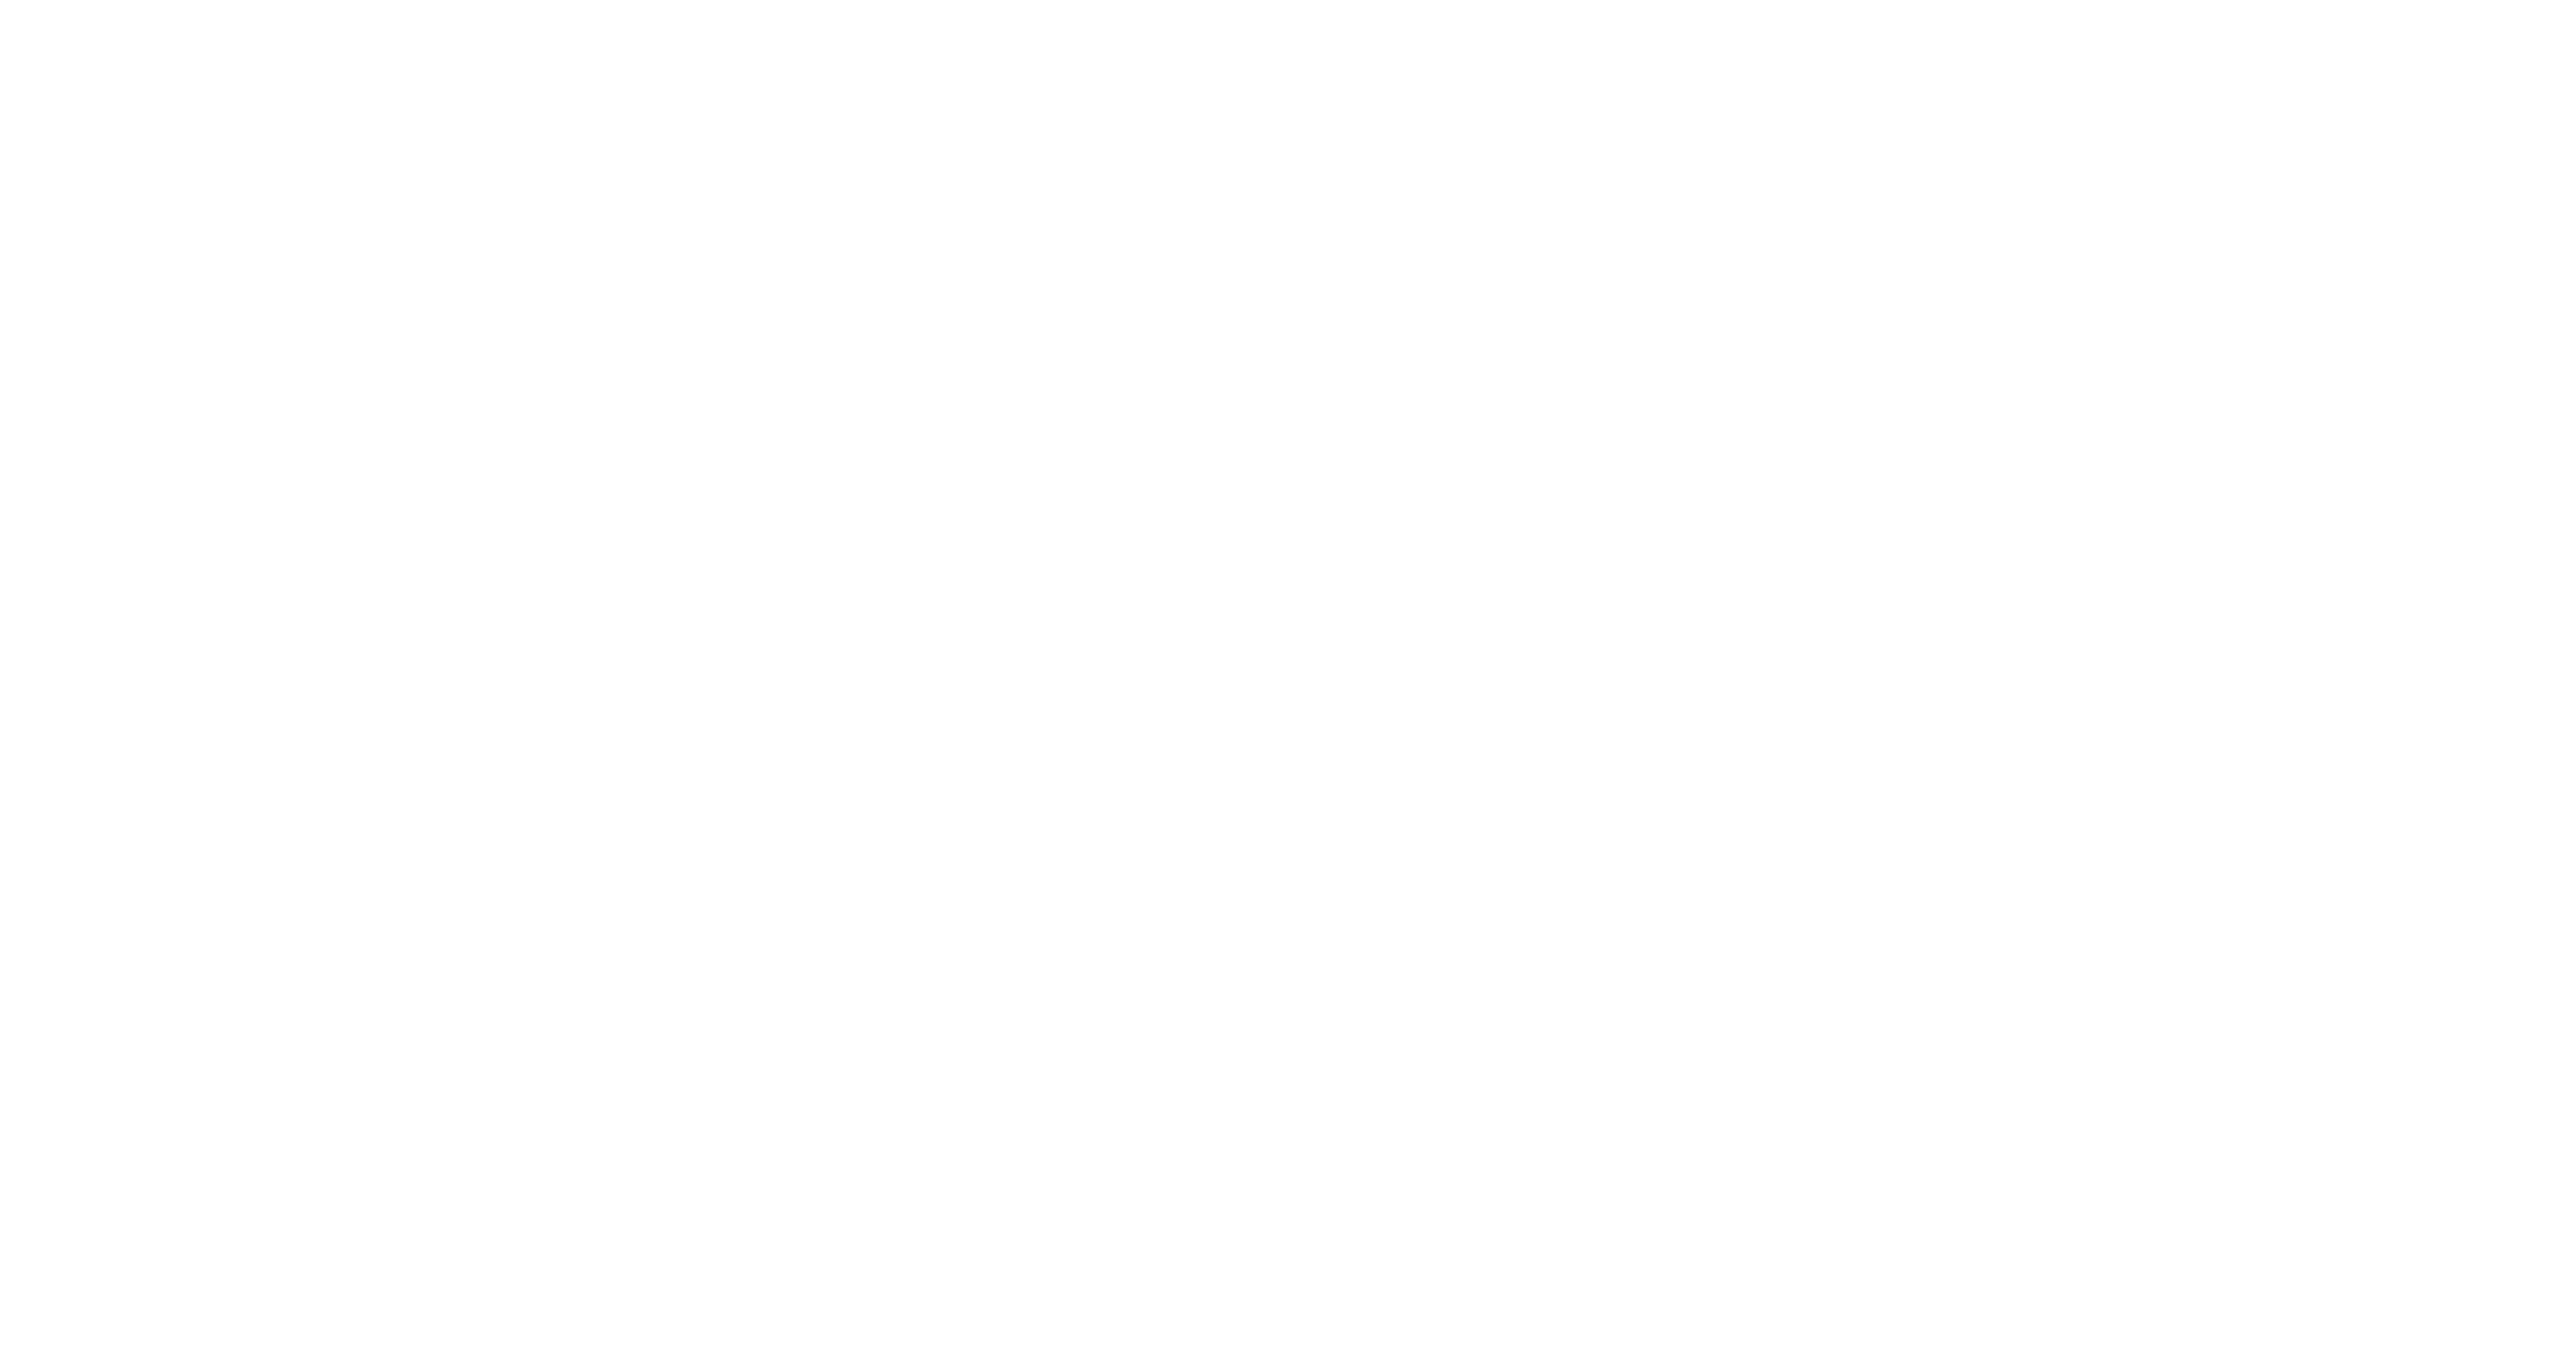 RegTech Day